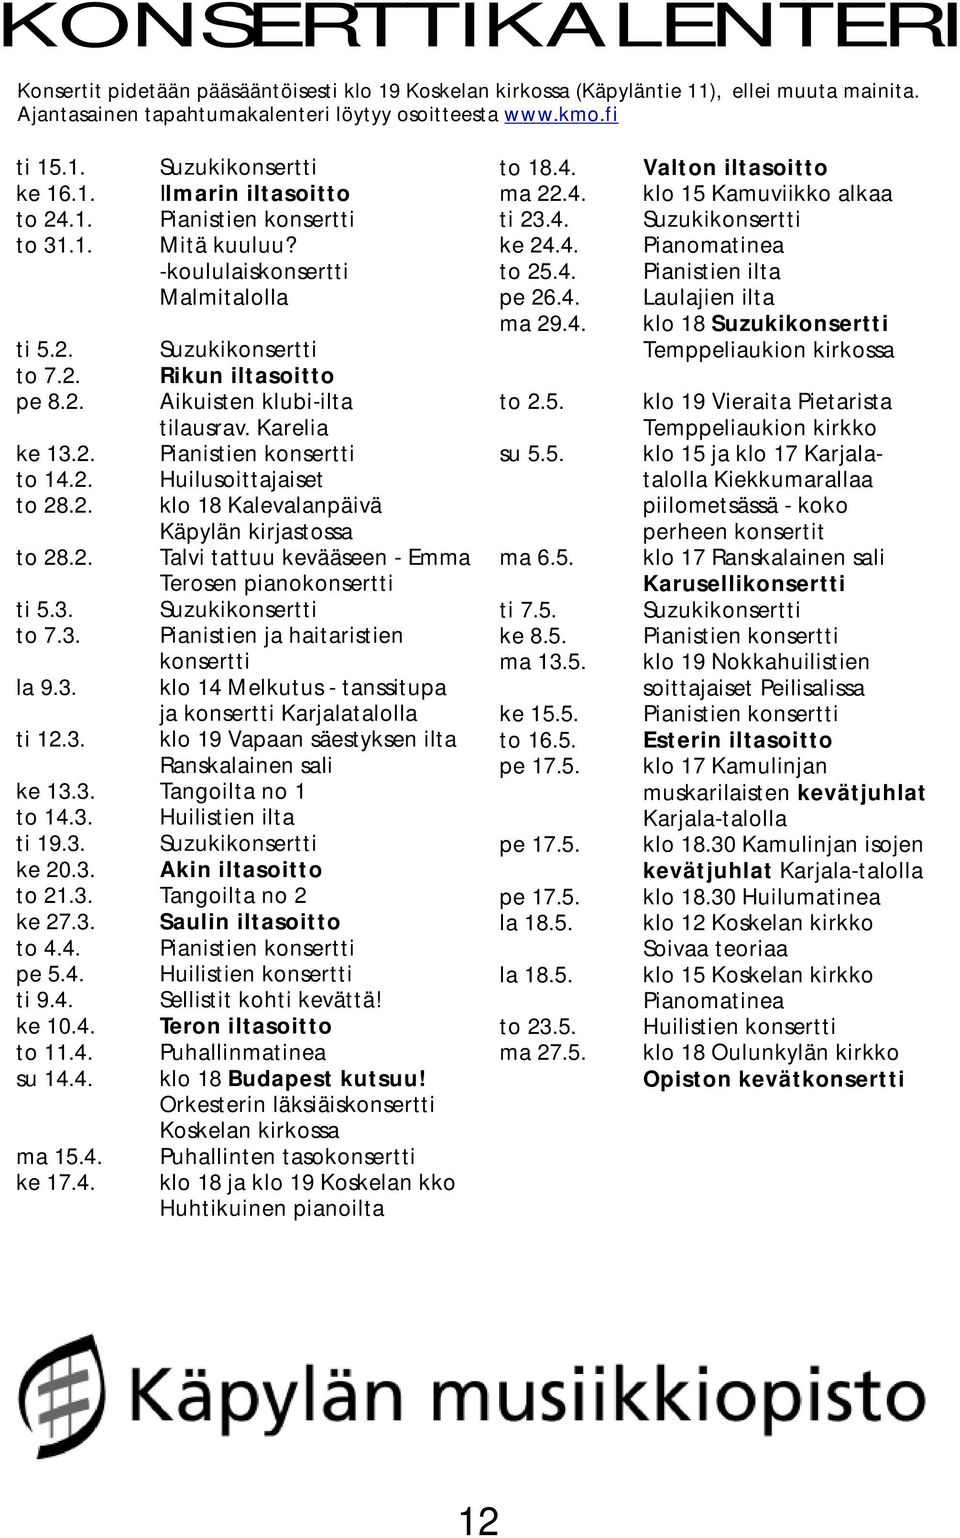 Karelia ke 13.2. Pianistien konsertti to 14.2. Huilusoittajaiset to 28.2. klo 18 Kalevalanpäivä Käpylän kirjastossa to 28.2. Talvi tattuu kevääseen - Emma Terosen pianokonsertti ti 5.3. Suzukikonsertti to 7.